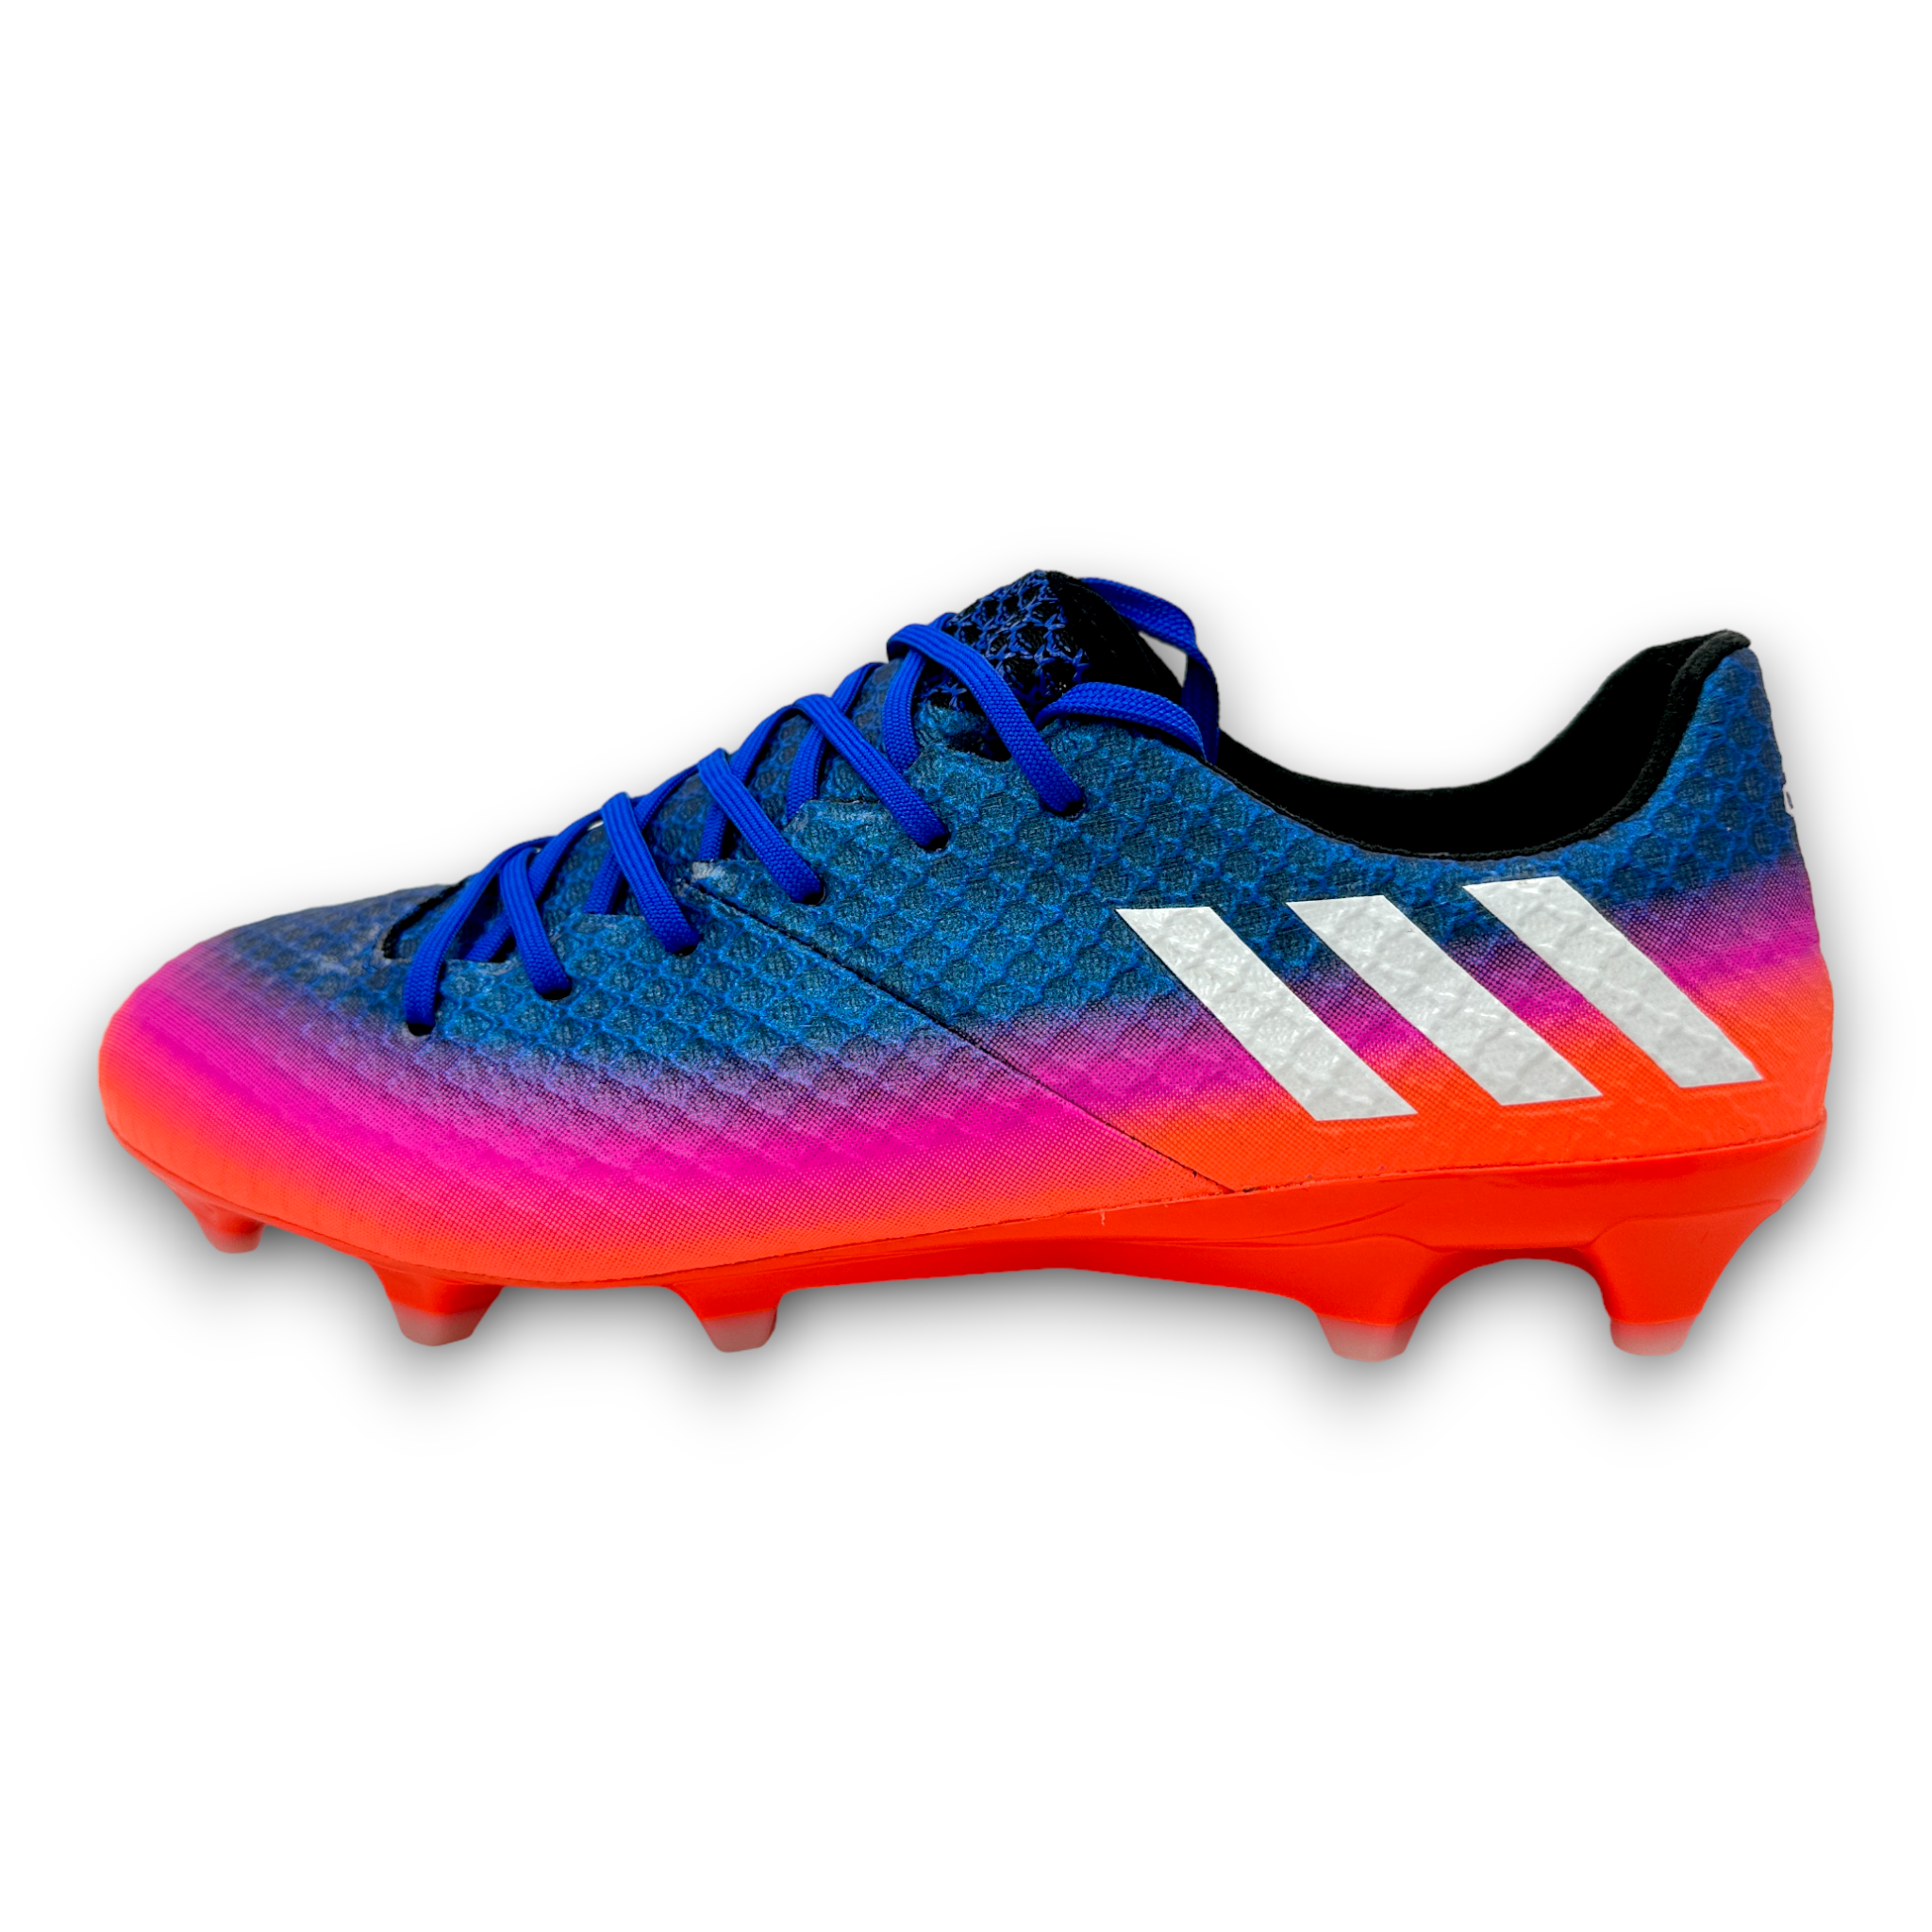 Adidas Messi 16.1 FG